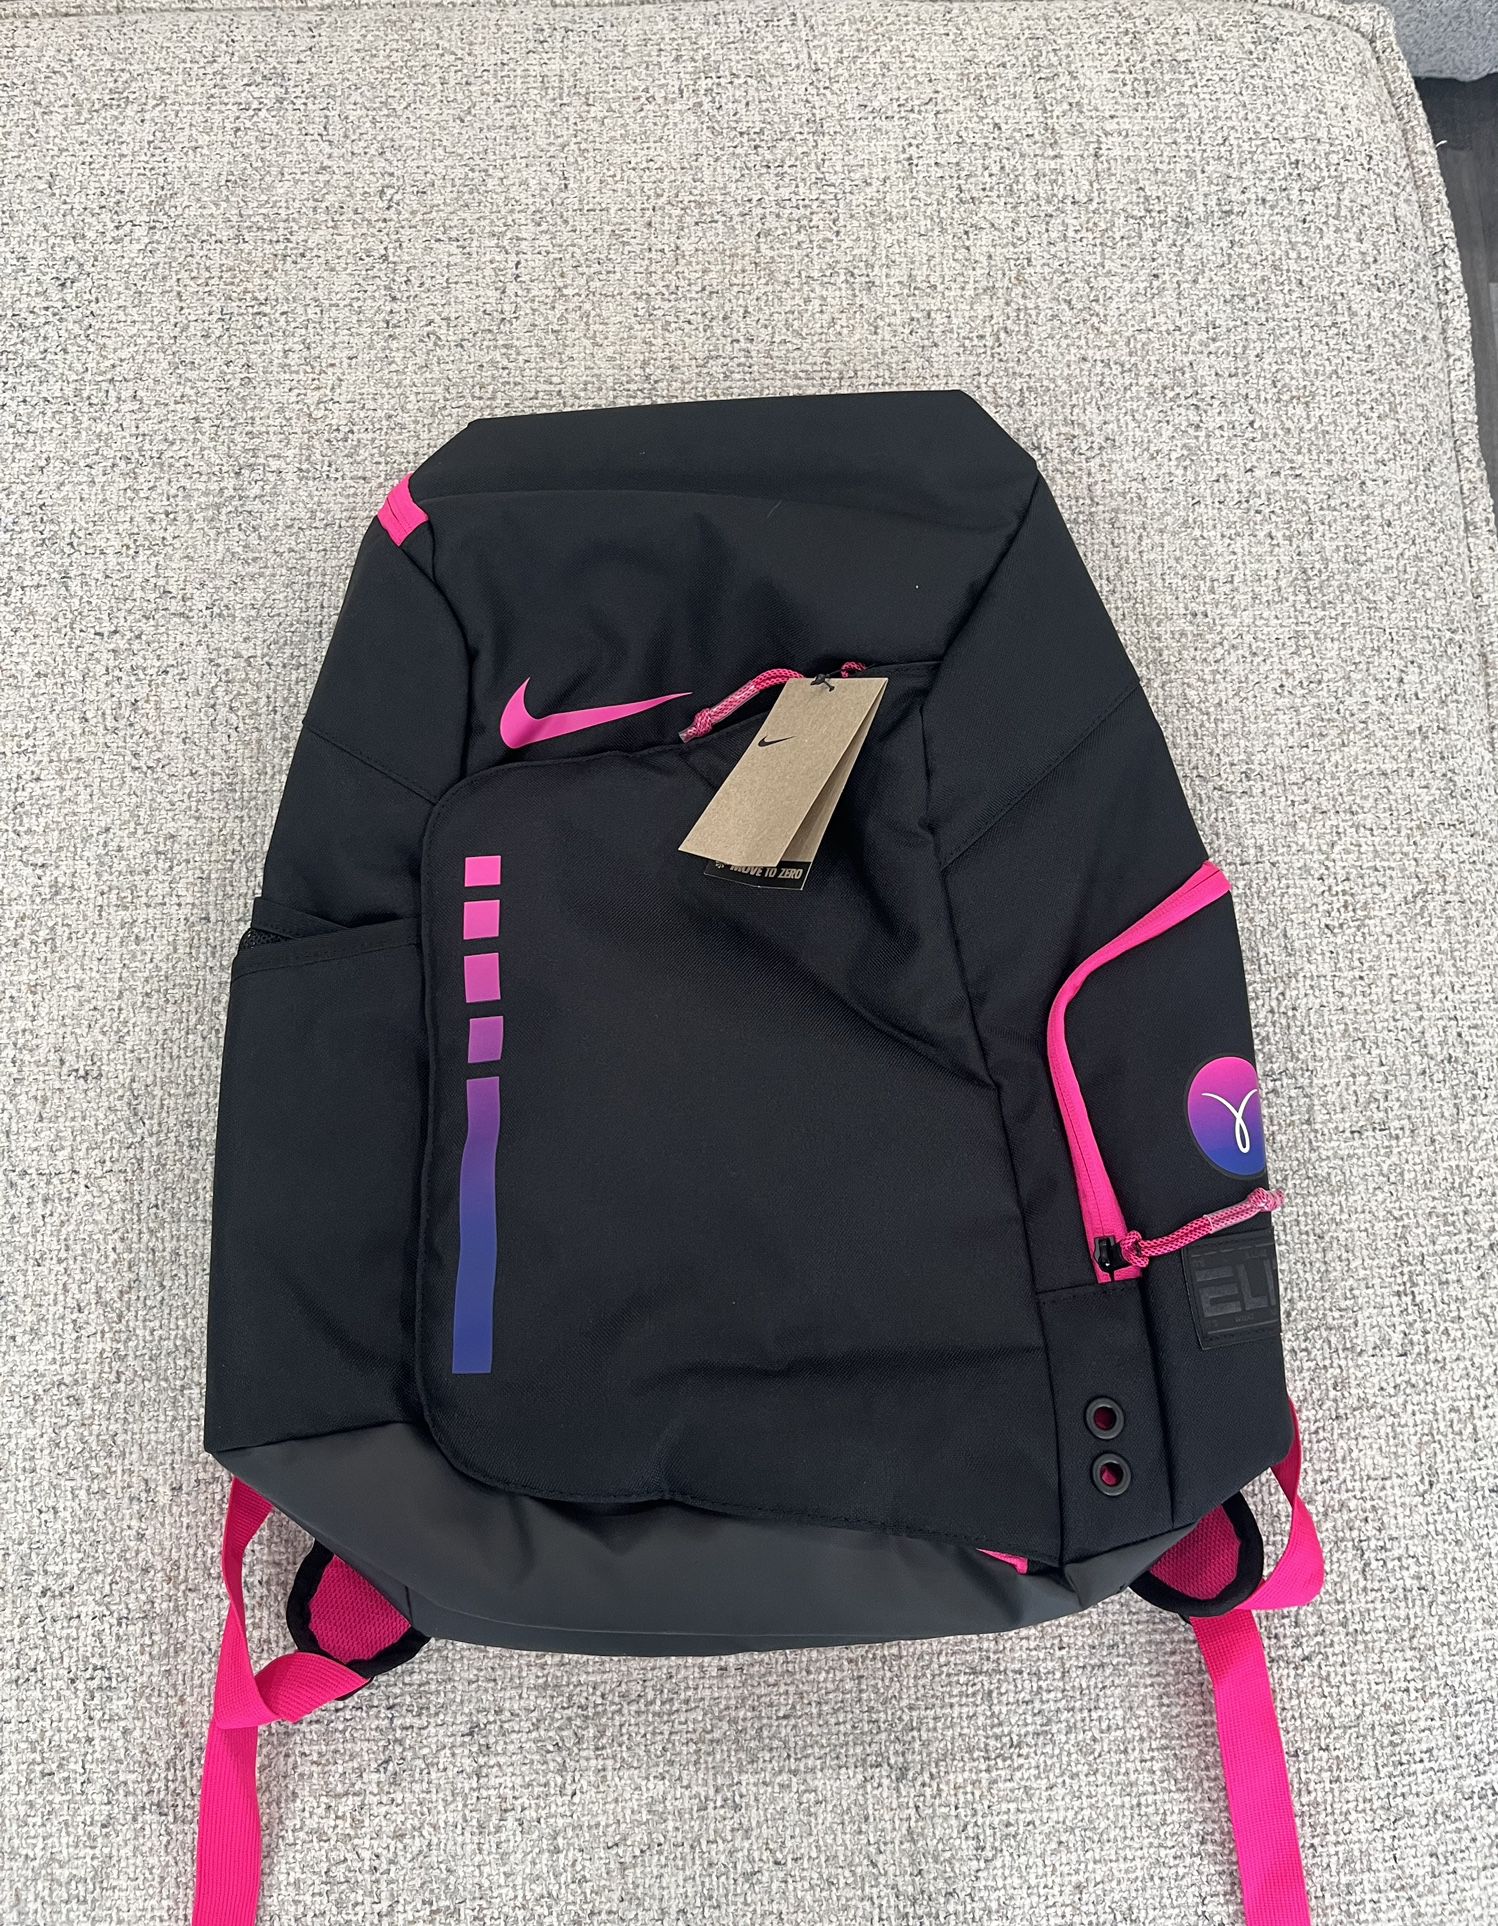 Nike Hoops Elite Backpack Kay Yow 2023 PINK/BLACK Very good Condition, Clean